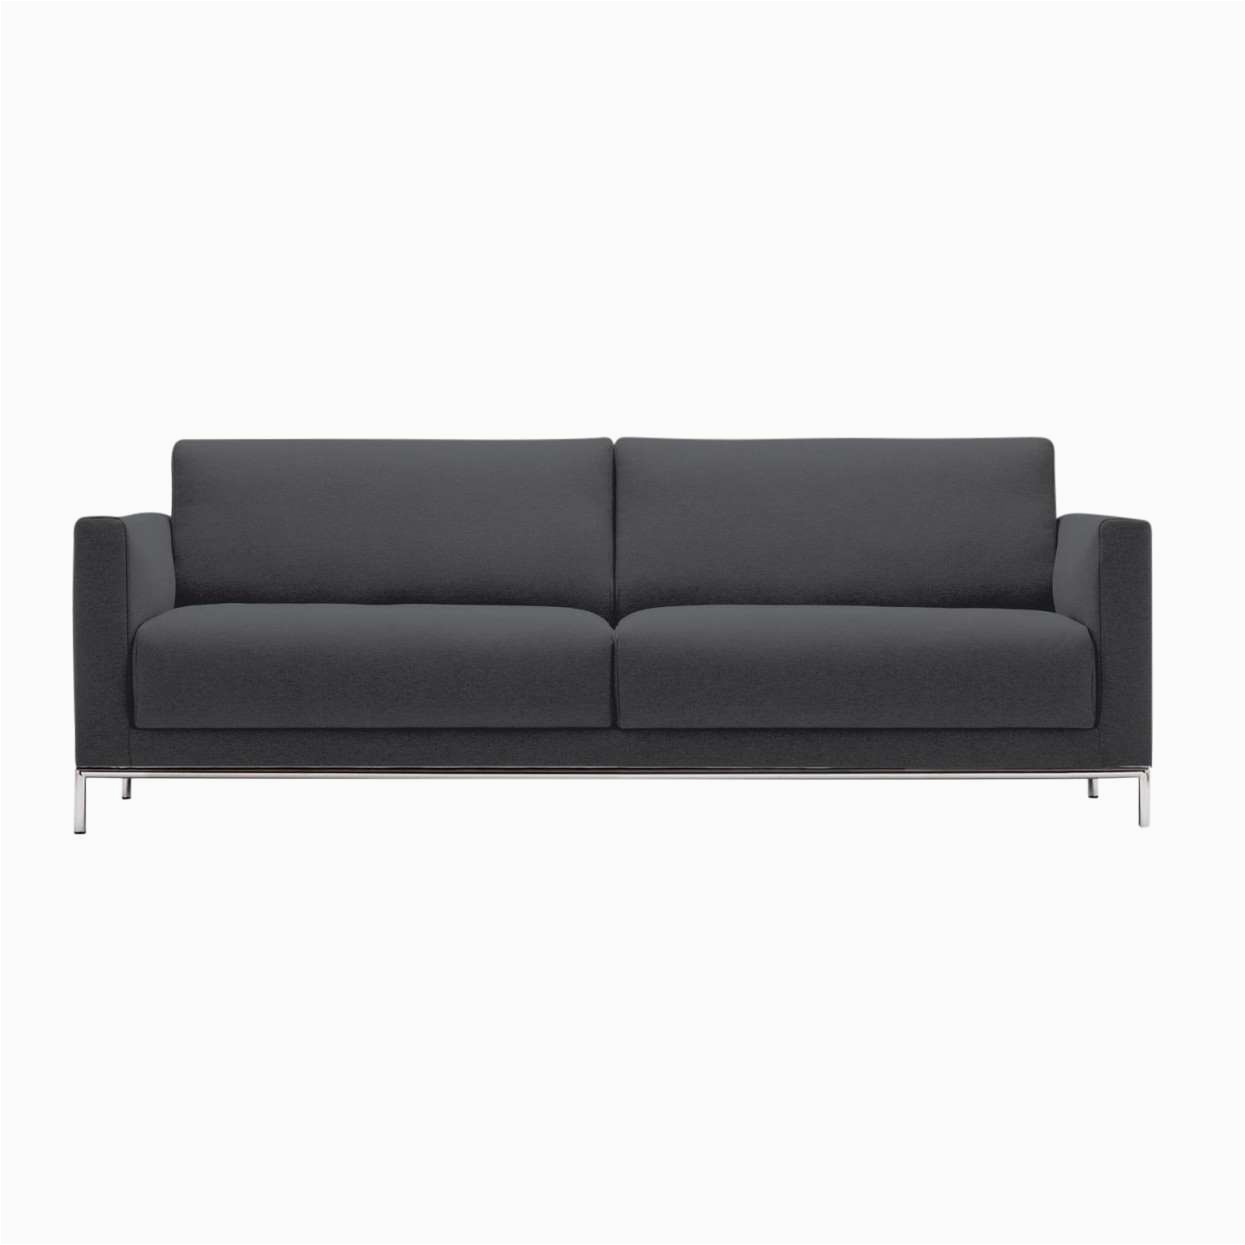 sofa grau leder inspirierend freistil 141 3 seater sofa frame chrome of sofa grau leder